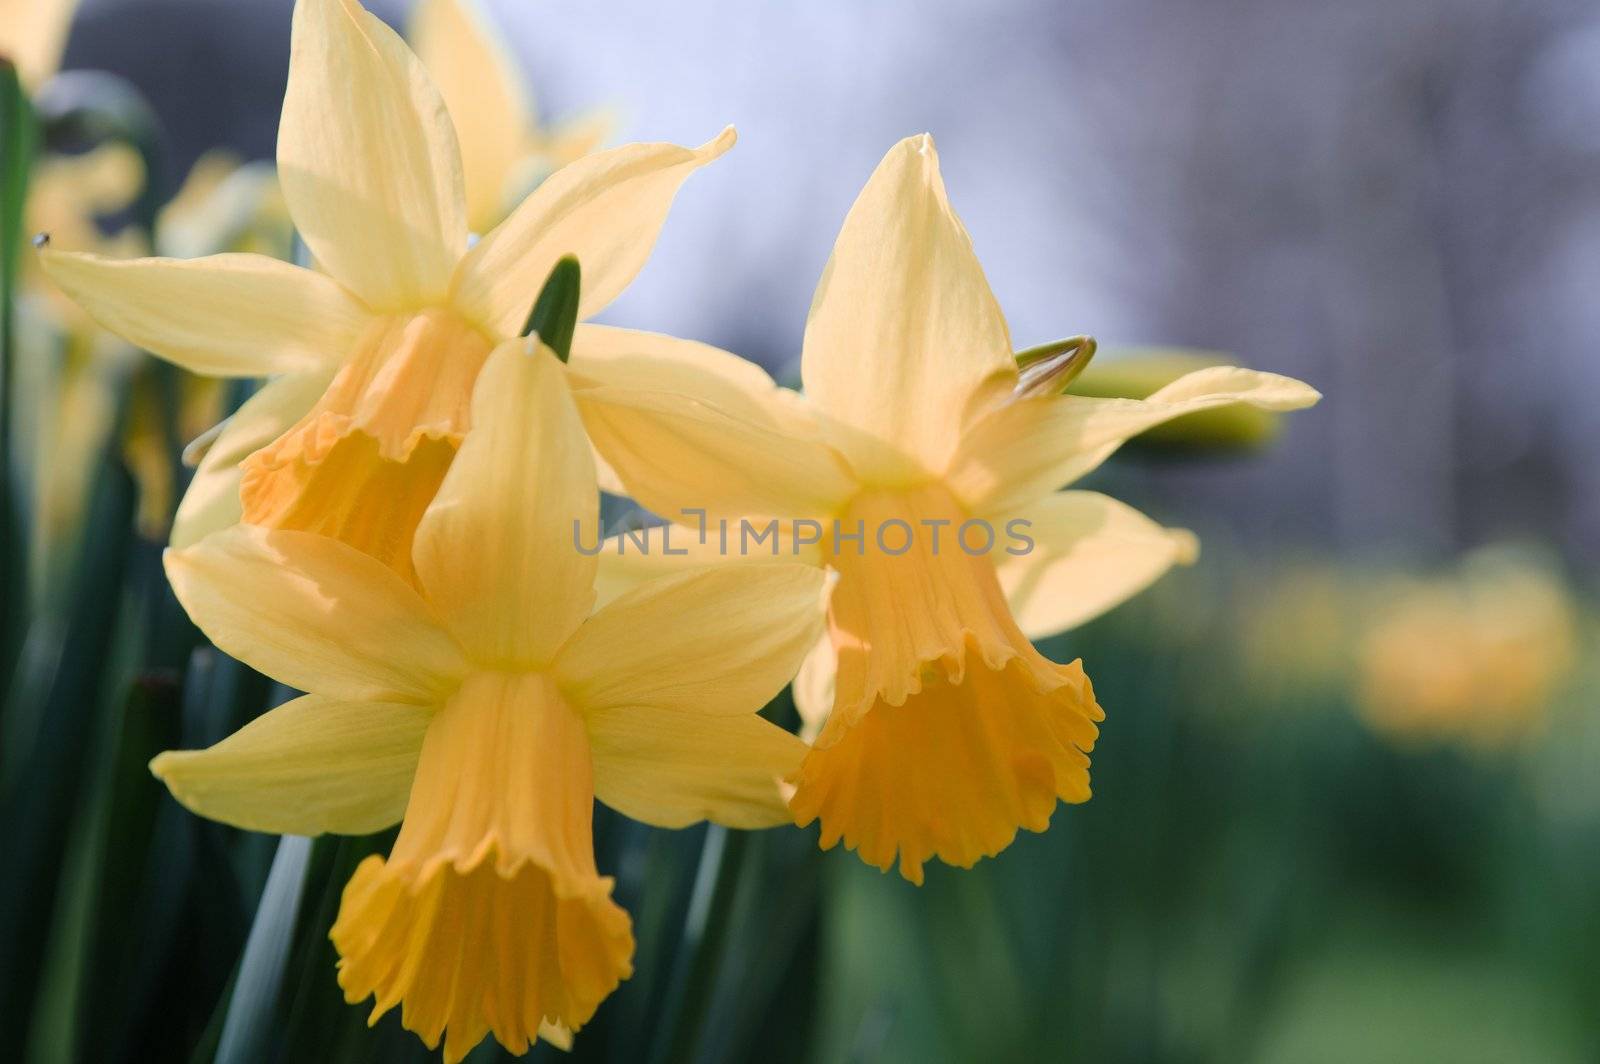 Daffodils by Jez22